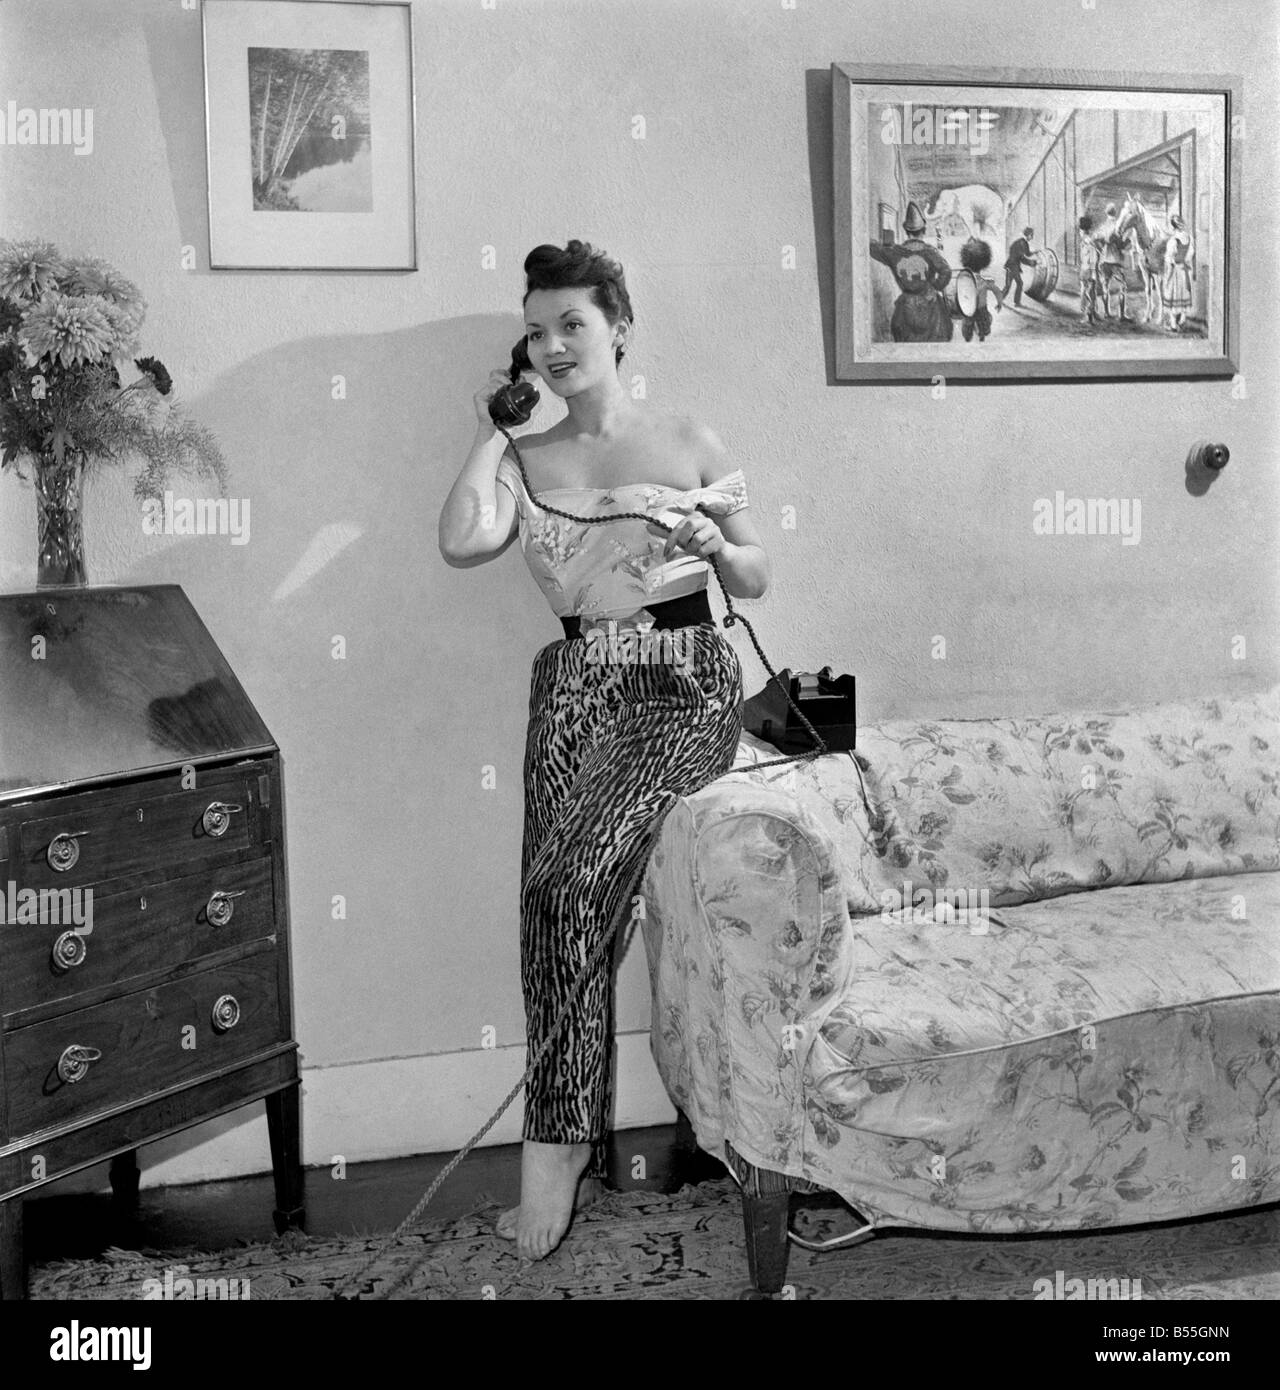 25 Jahre alten Lita Rose, verstorbenen Sängers mit Ted Heaths Band hat jetzt einen neuen Vertrag, das Land auf eine Vielzahl Vertrag für vierzig Wochen tour. Dafür erhalten sie zwölf tausend Pfund. Dies wird behauptet, eines der höchsten Gehalt für einen Sänger. Miss Rose, die zuerst einen Hit mit"Wieviel das Hündchen im Fenster" gemacht. Ihre Mutter war Englisch und ihr Vater Spanisch. Dezember 1953 D7416 Stockfoto